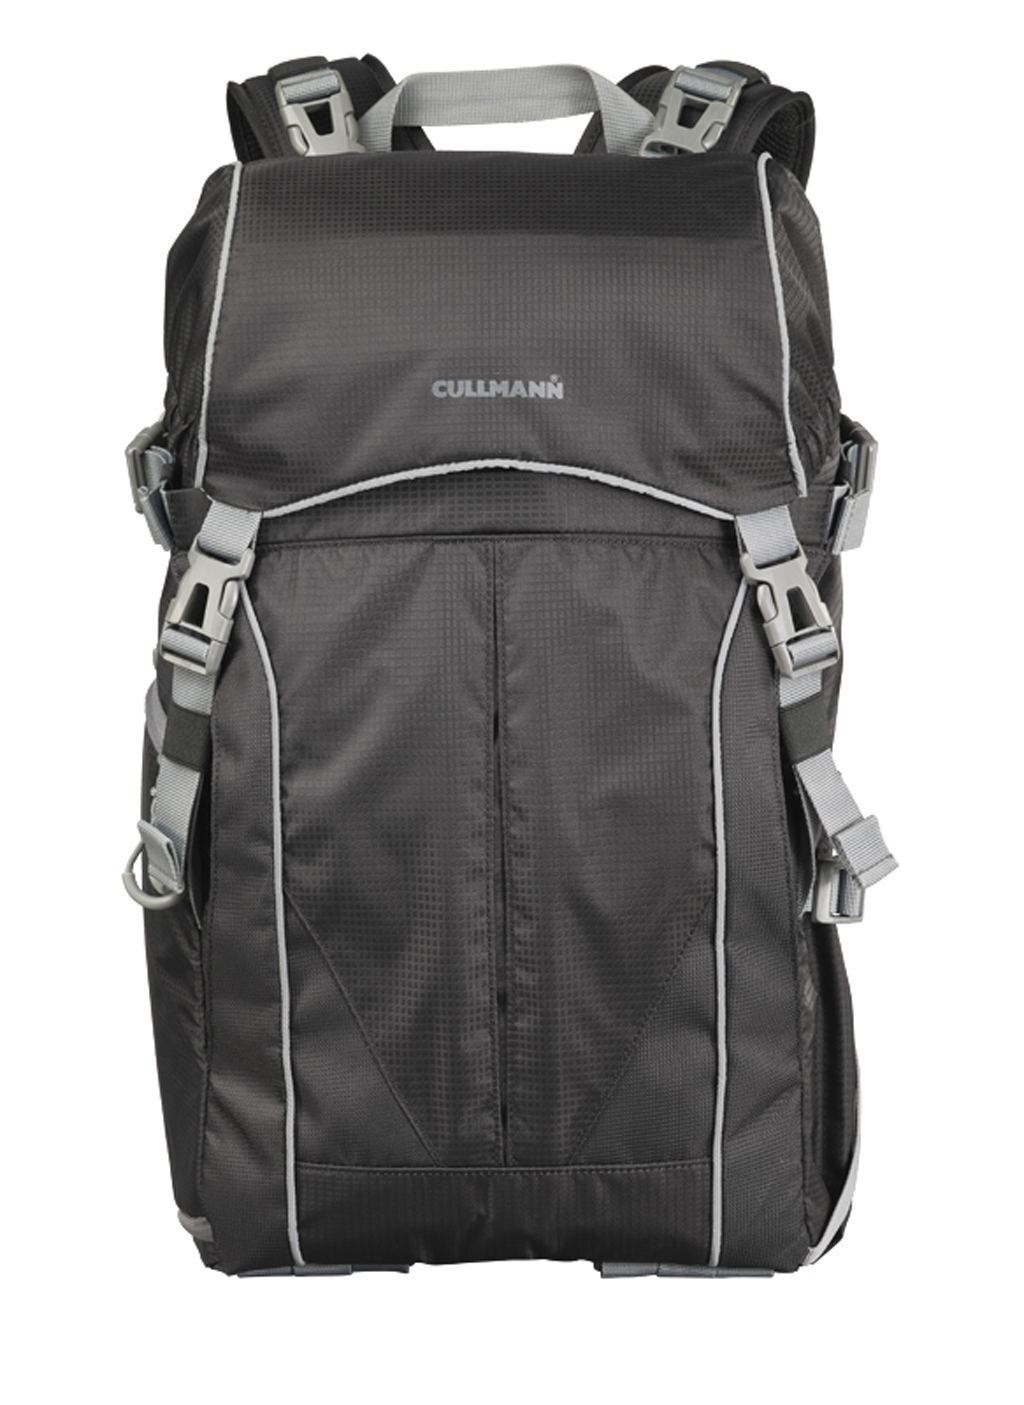 Cullmann Rucksack Ultralight 2in1 DayPack 600+ schwarz